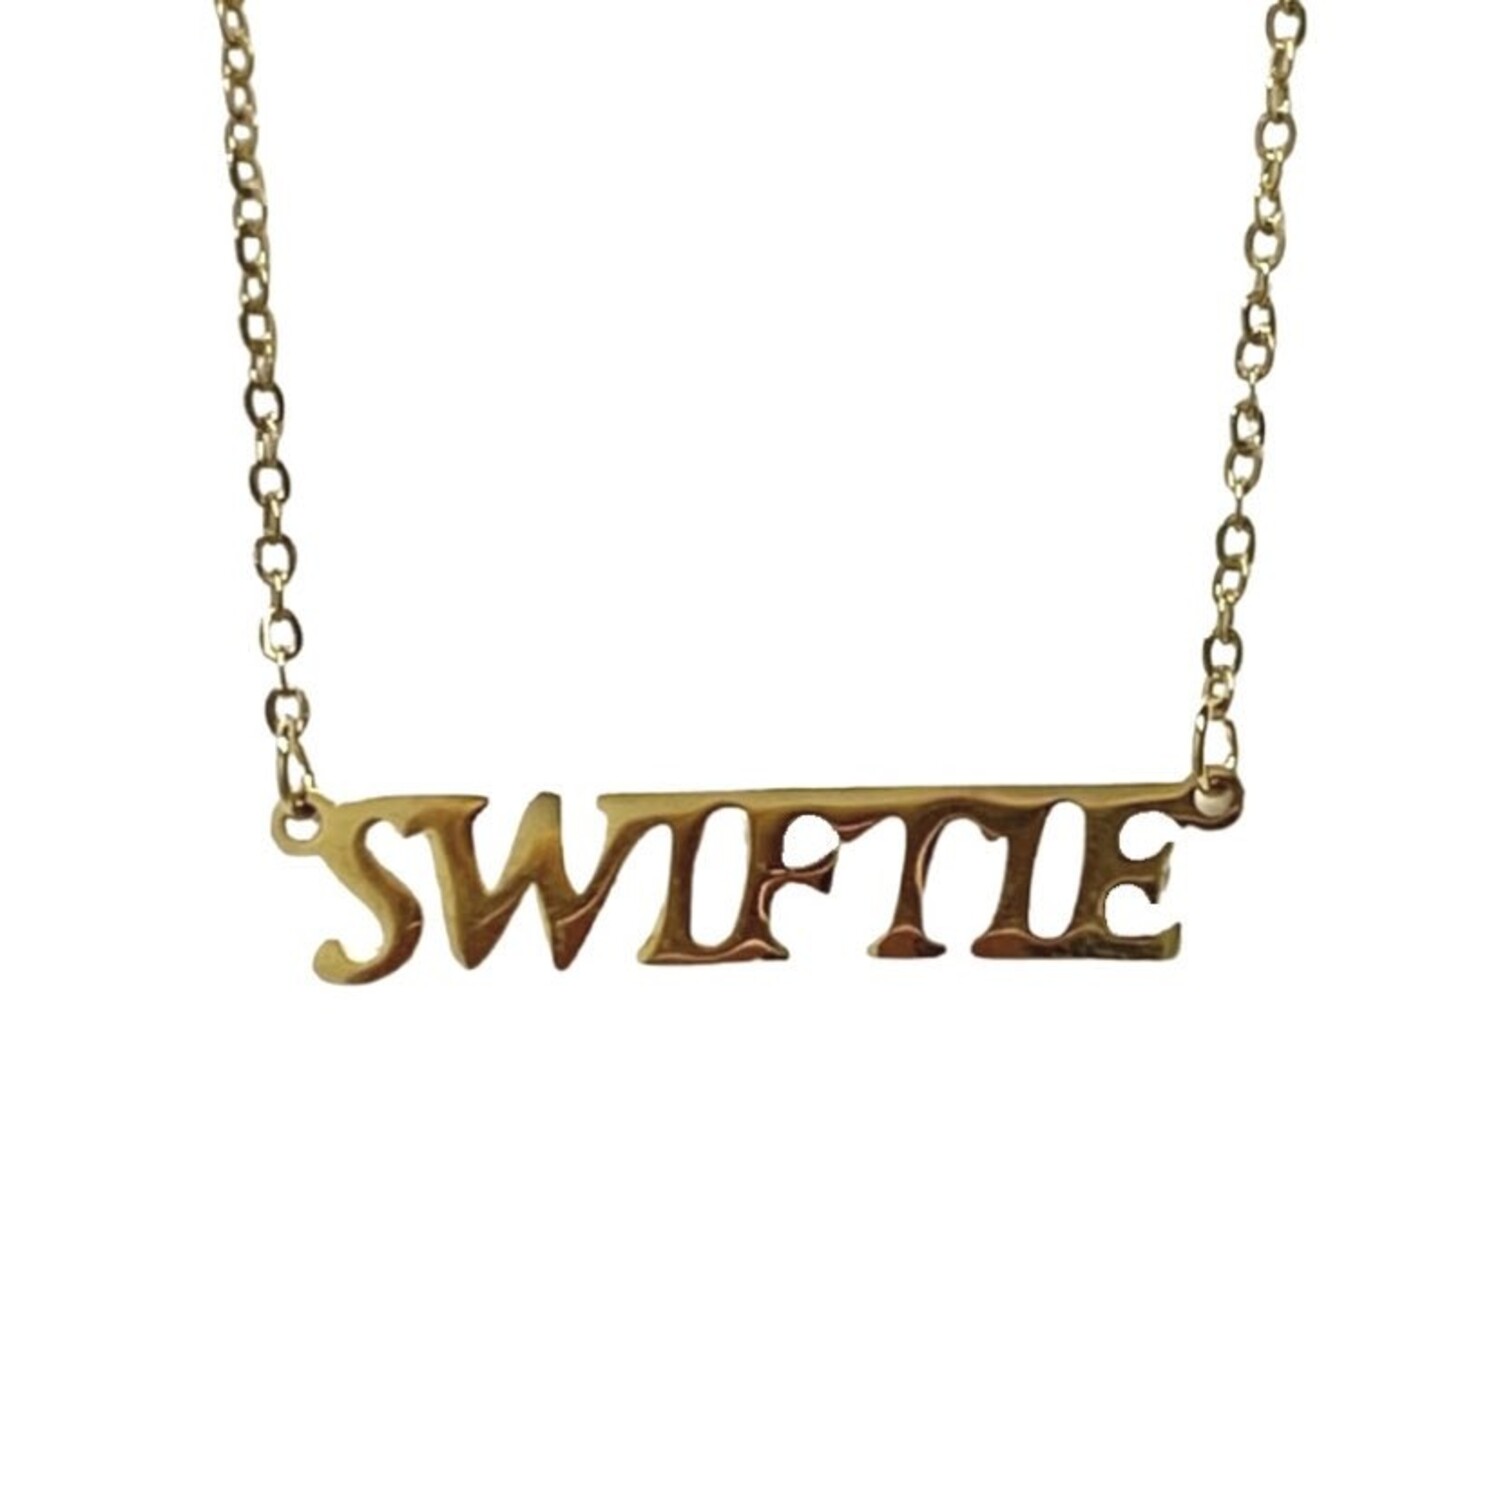 Swiftie - What is a swiftie?